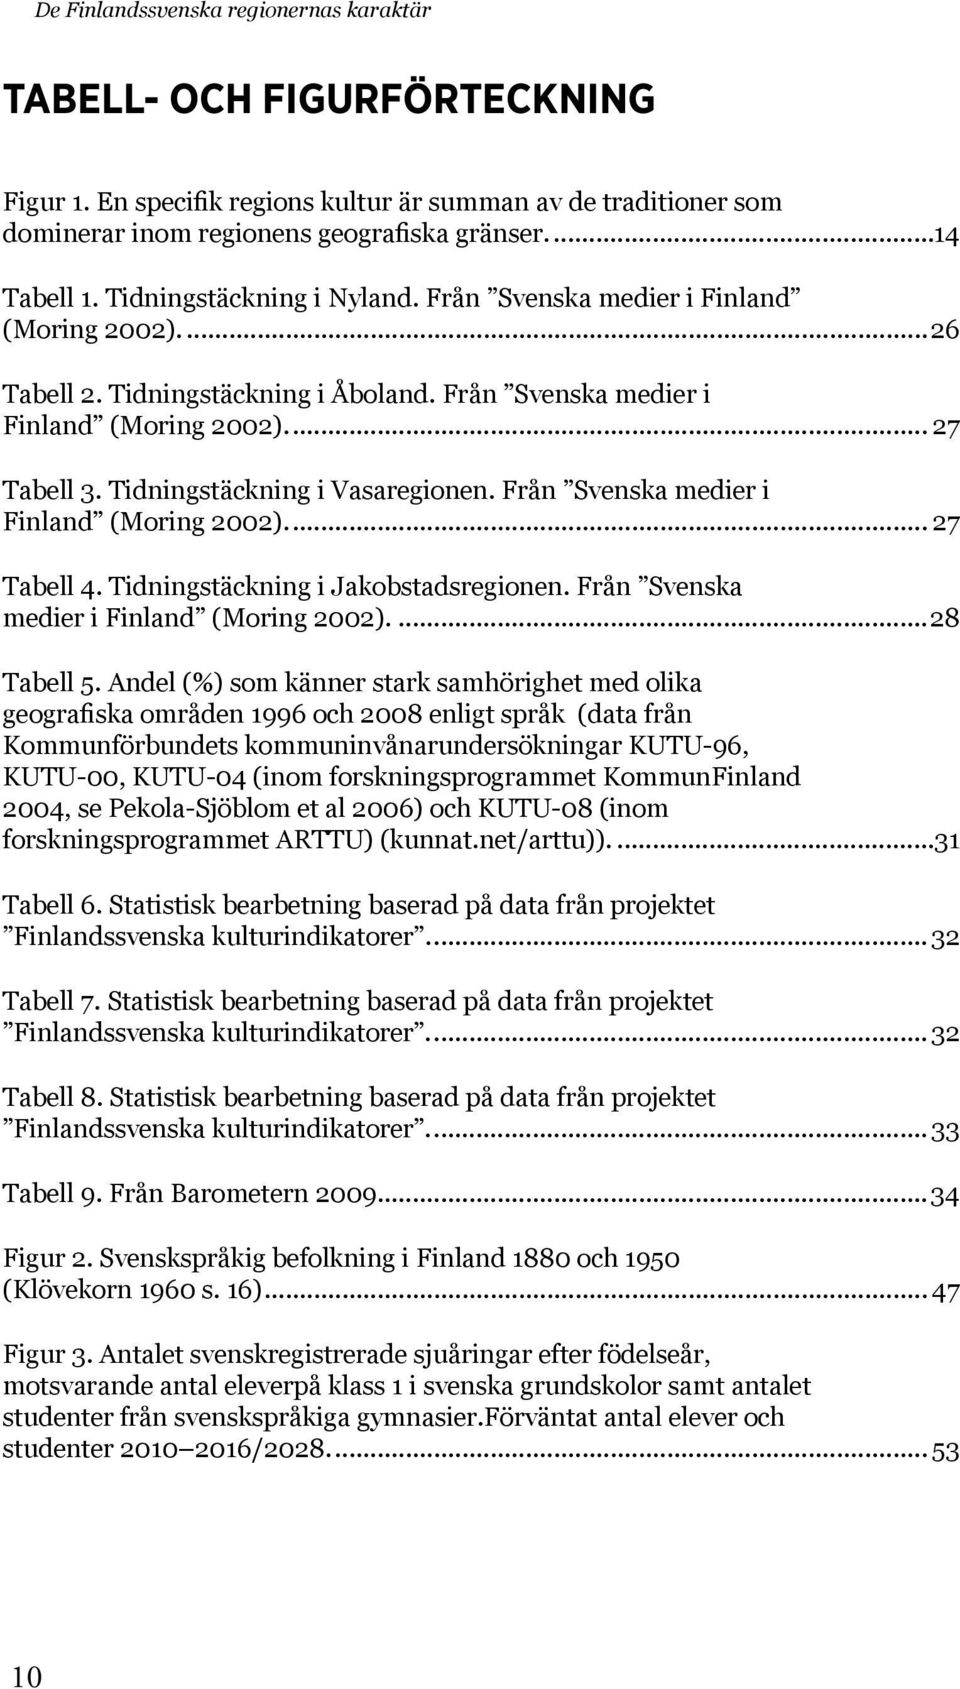 Tidningstäckning i Vasaregionen. Från Svenska medier i Finland (Moring 2002)... 27 Tabell 4. Tidningstäckning i Jakobstadsregionen. Från Svenska medier i Finland (Moring 2002)...28 Tabell 5.